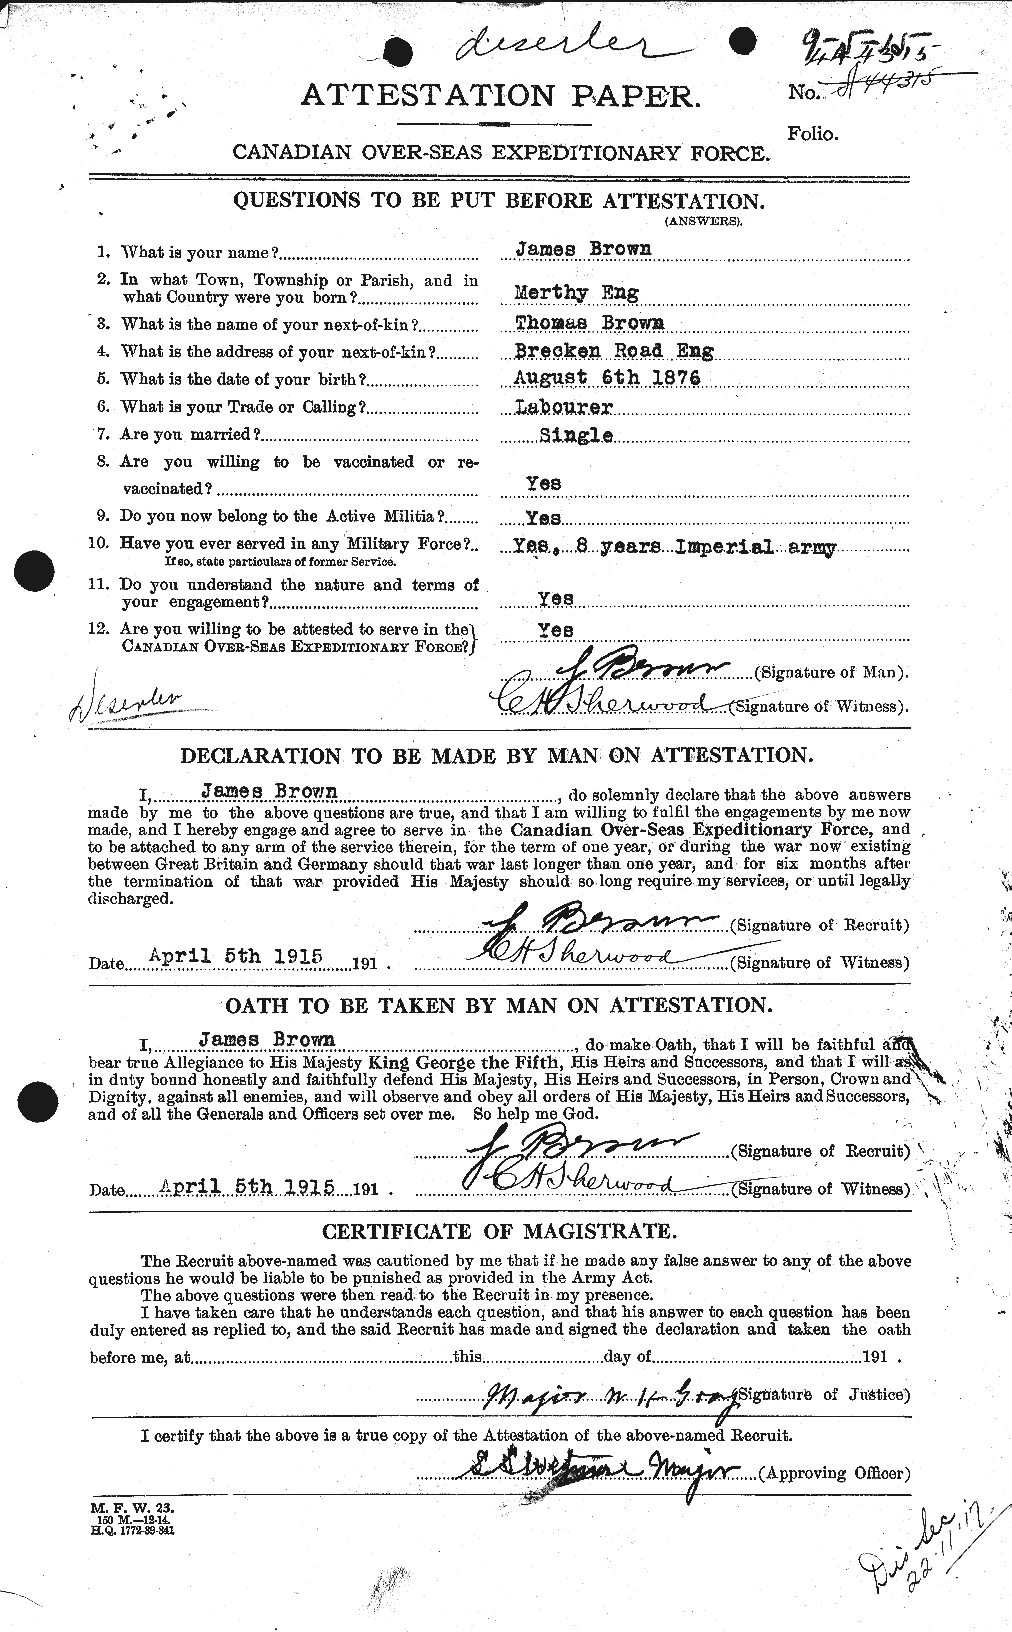 Dossiers du Personnel de la Première Guerre mondiale - CEC 265729a